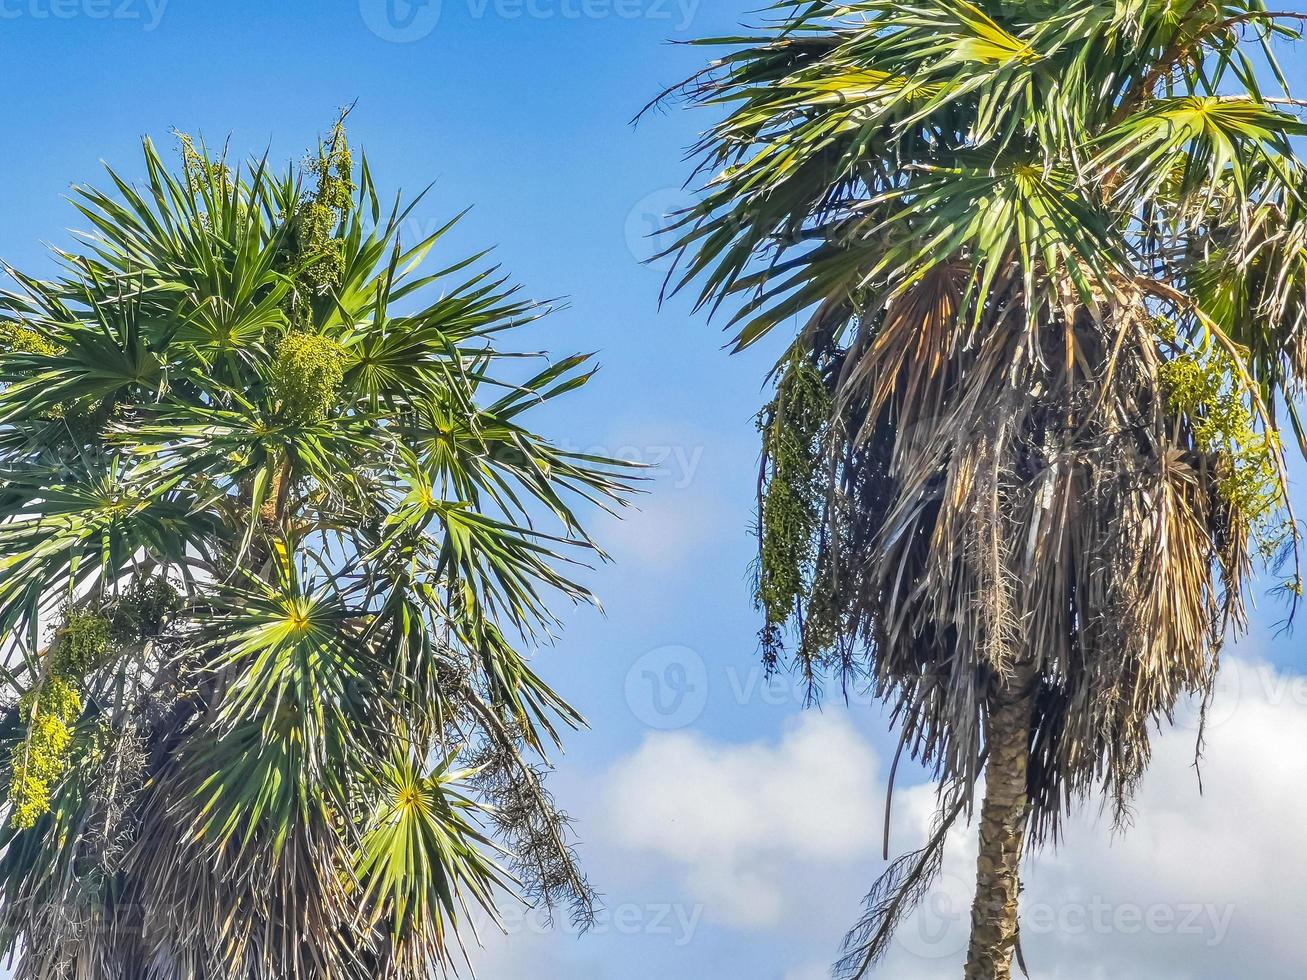 tropische palmen kokosnüsse blauer himmel in tulum mexiko. foto